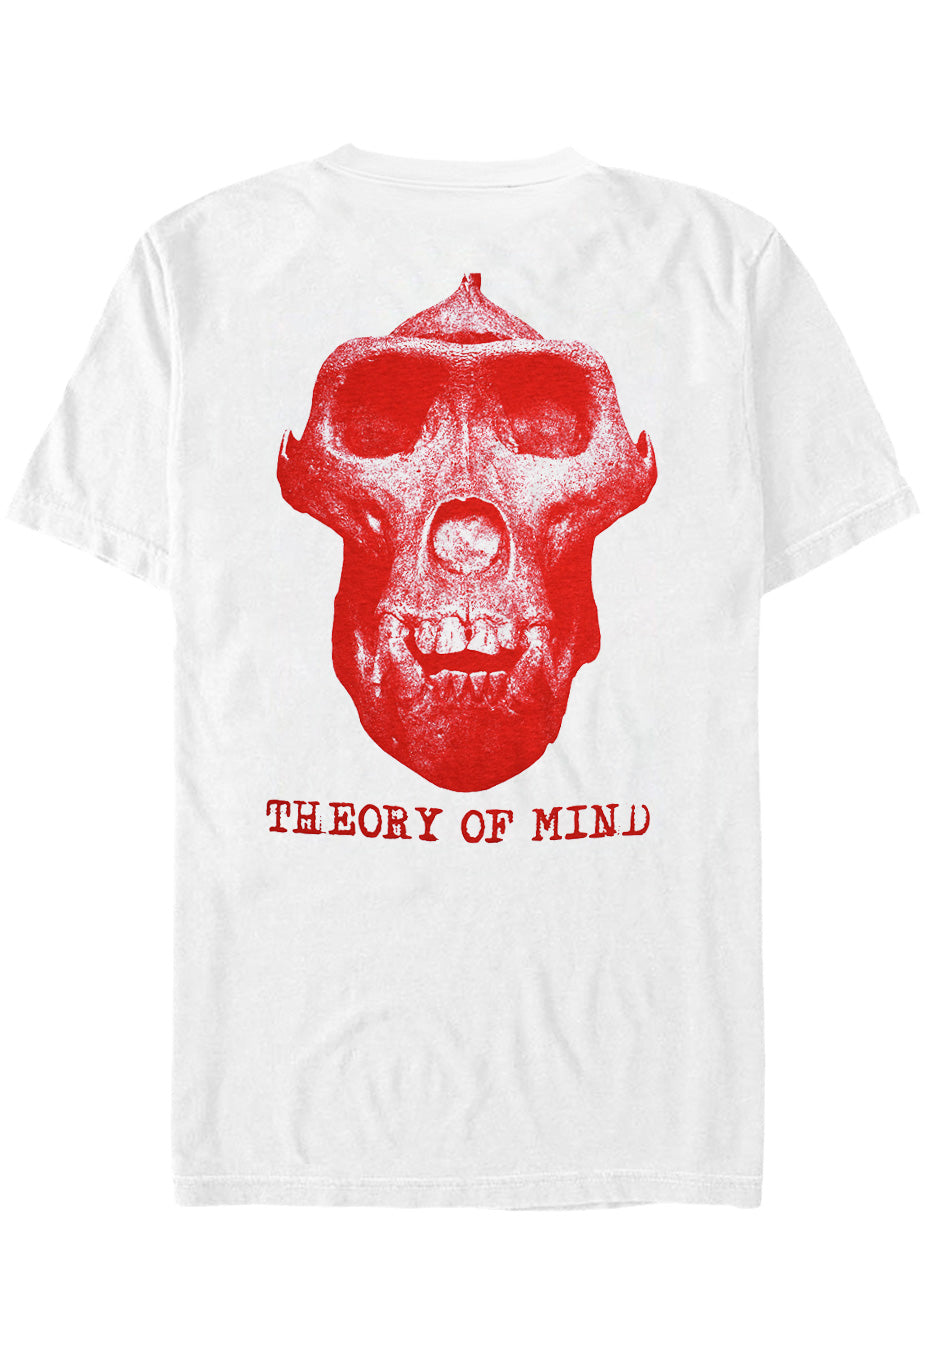 Kublai Khan - Monkey Skull White - T-Shirt | Neutral-Image